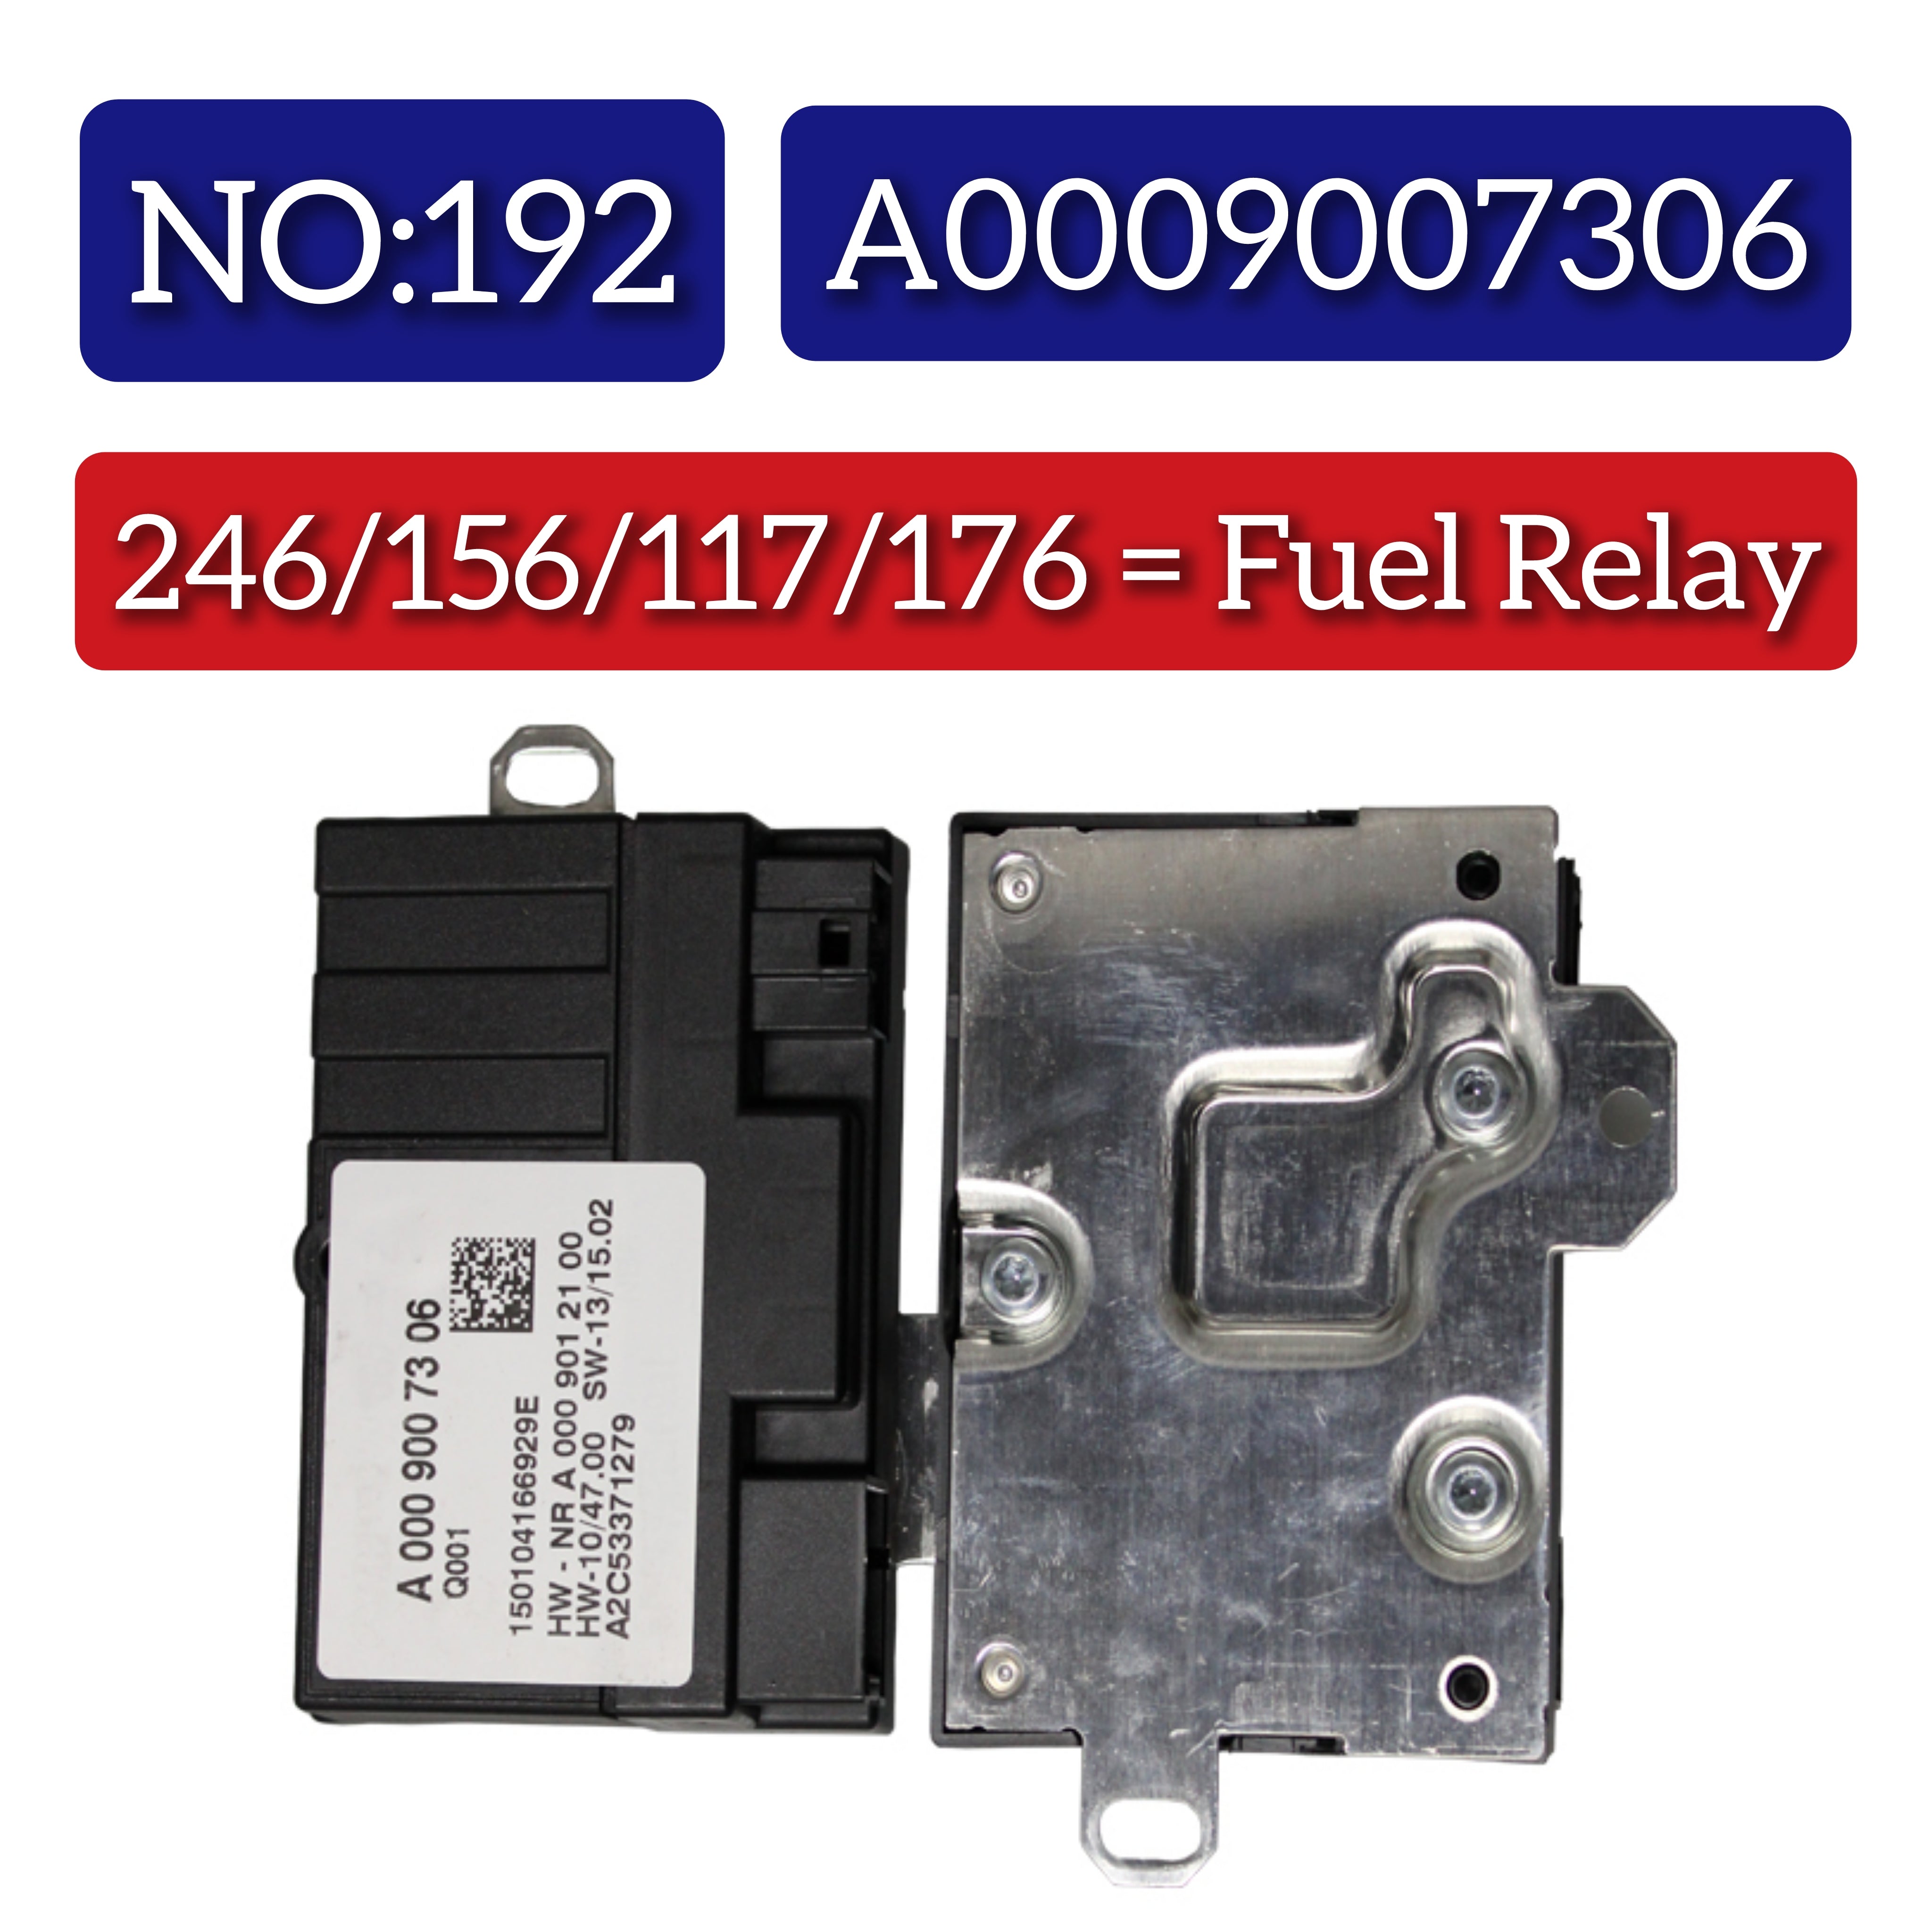 Fuel Pump Control Module A0009007306 For MERCEDES-BENZ A-CLASS W176 & B-CLASS W246, E-CLASS W212, GLA-CLASS X156,  S-CLASS W221 Tag-BL-192